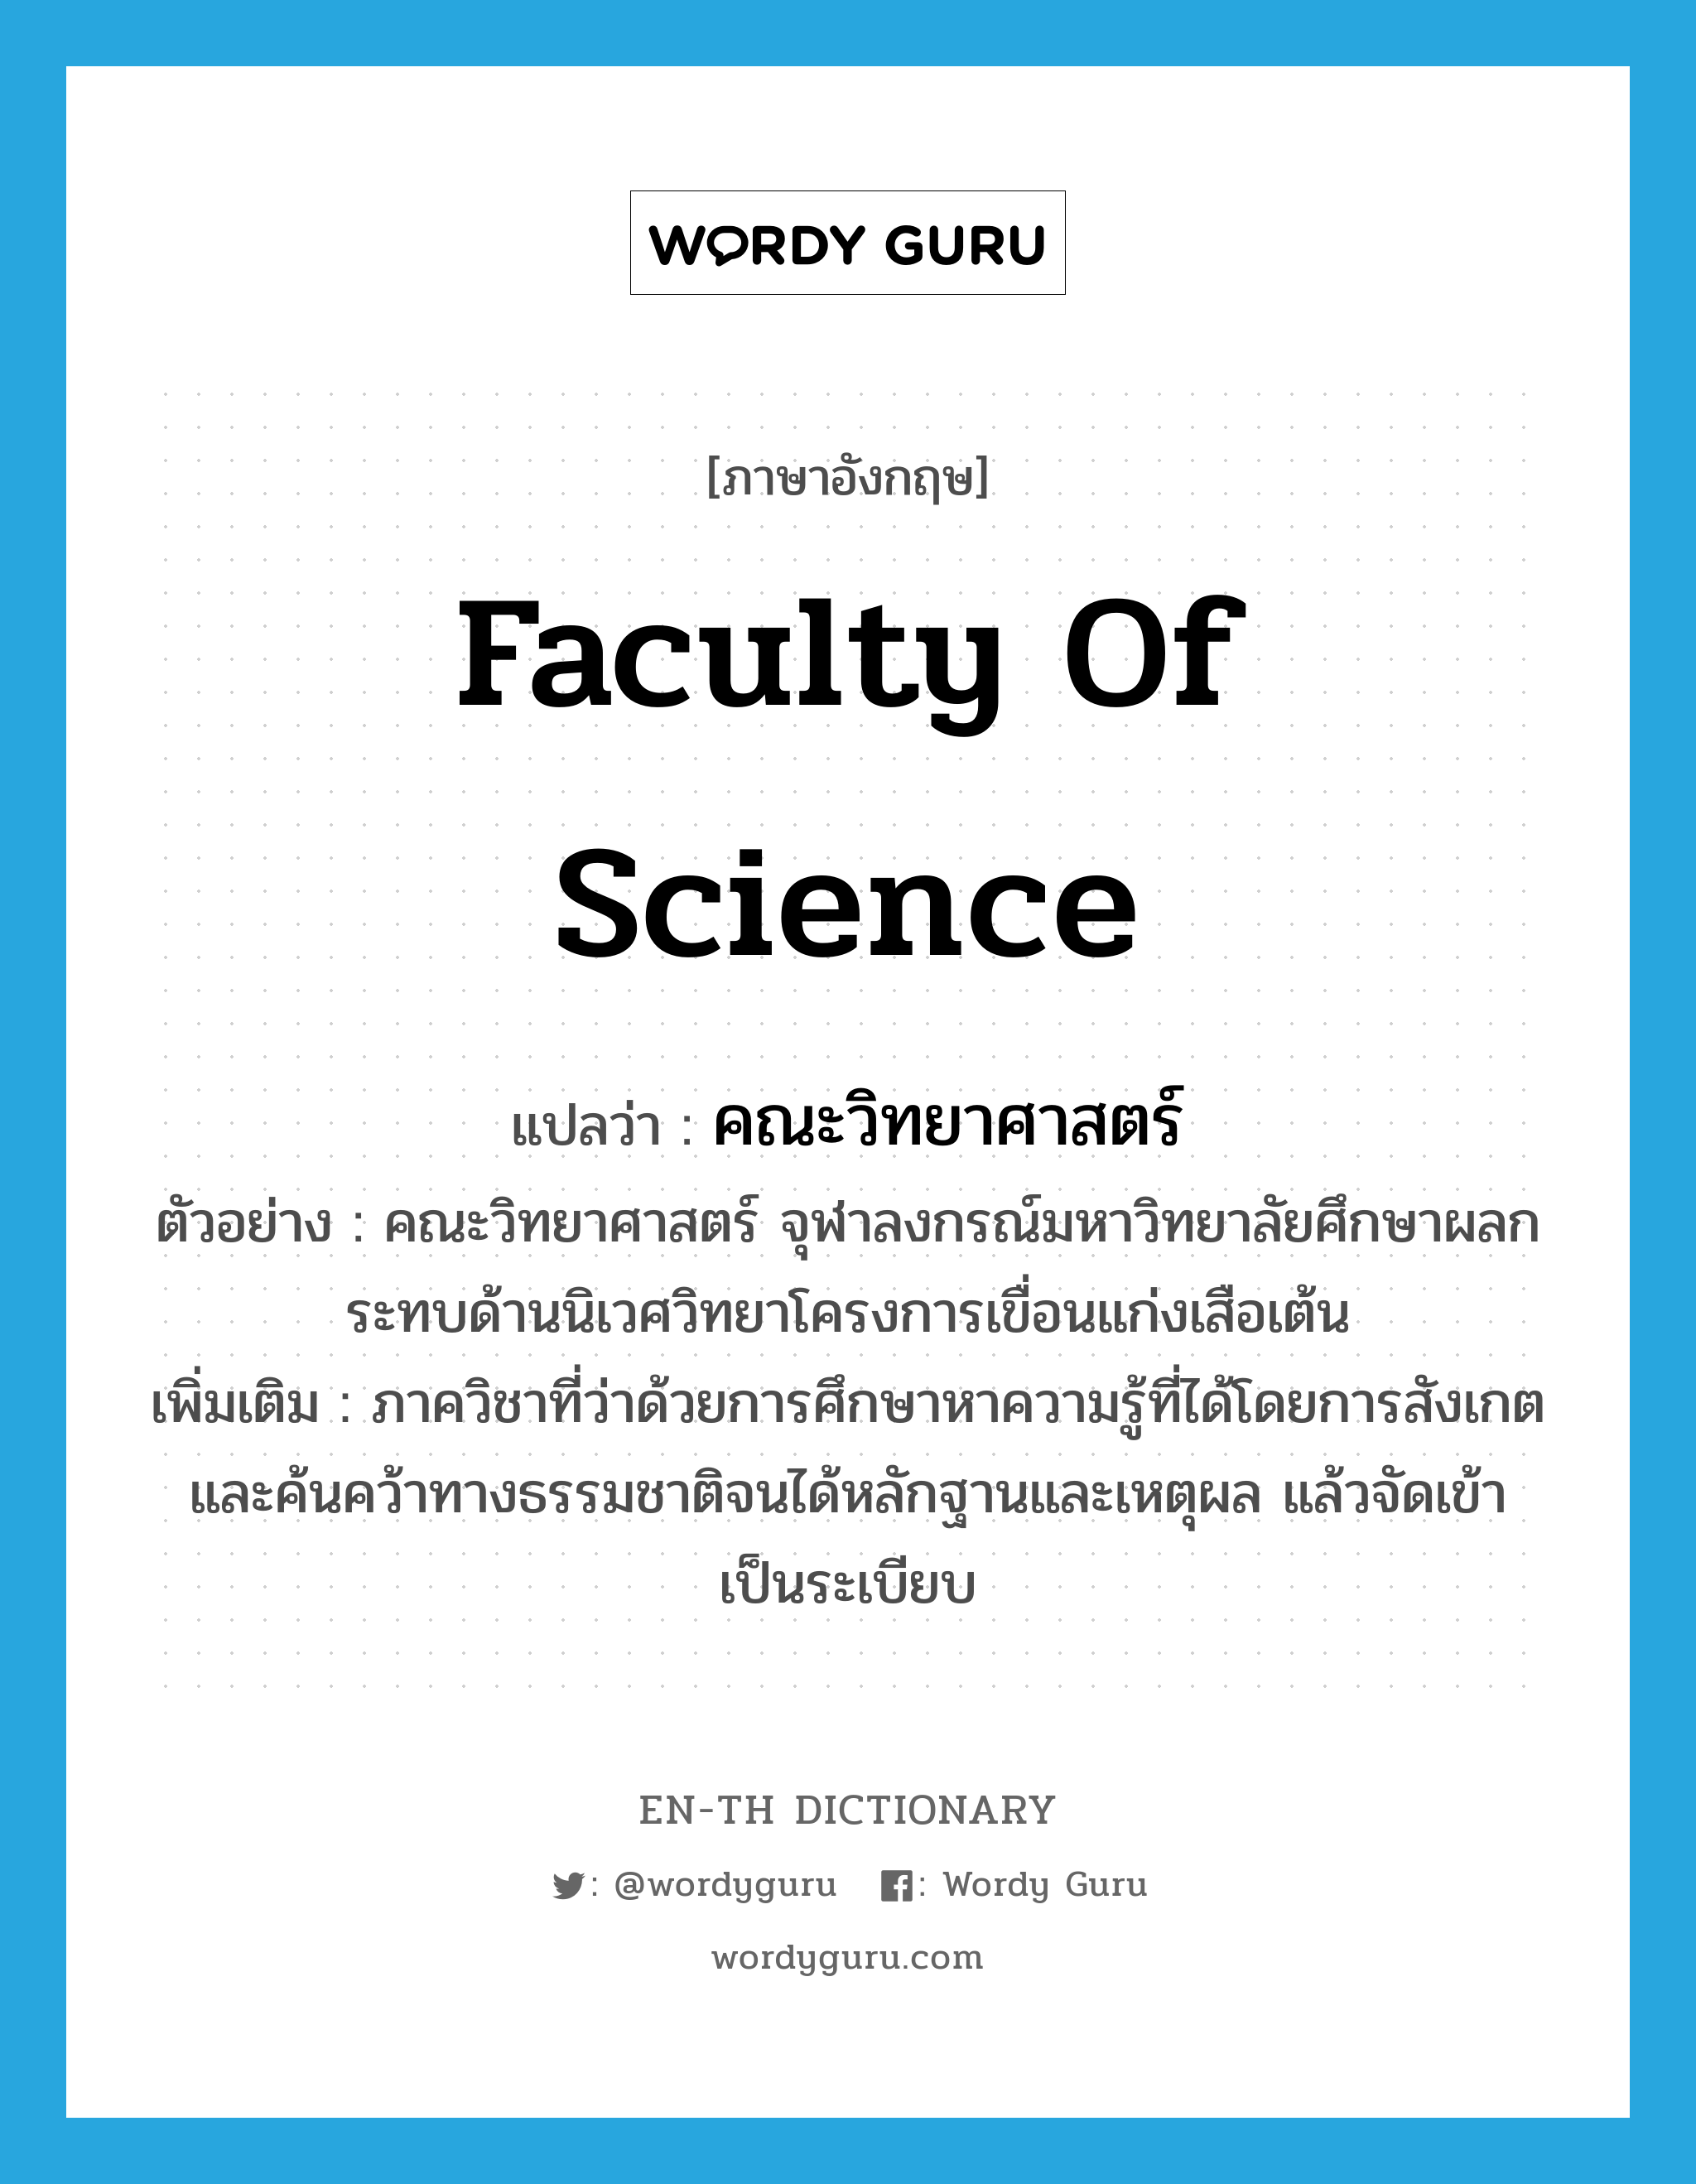 คณะวิทยาศาสตร์ ภาษาอังกฤษ?, คำศัพท์ภาษาอังกฤษ คณะวิทยาศาสตร์ แปลว่า Faculty of Science ประเภท N ตัวอย่าง คณะวิทยาศาสตร์ จุฬาลงกรณ์มหาวิทยาลัยศึกษาผลกระทบด้านนิเวศวิทยาโครงการเขื่อนแก่งเสือเต้น เพิ่มเติม ภาควิชาที่ว่าด้วยการศึกษาหาความรู้ที่ได้โดยการสังเกตและค้นคว้าทางธรรมชาติจนได้หลักฐานและเหตุผล แล้วจัดเข้าเป็นระเบียบ หมวด N